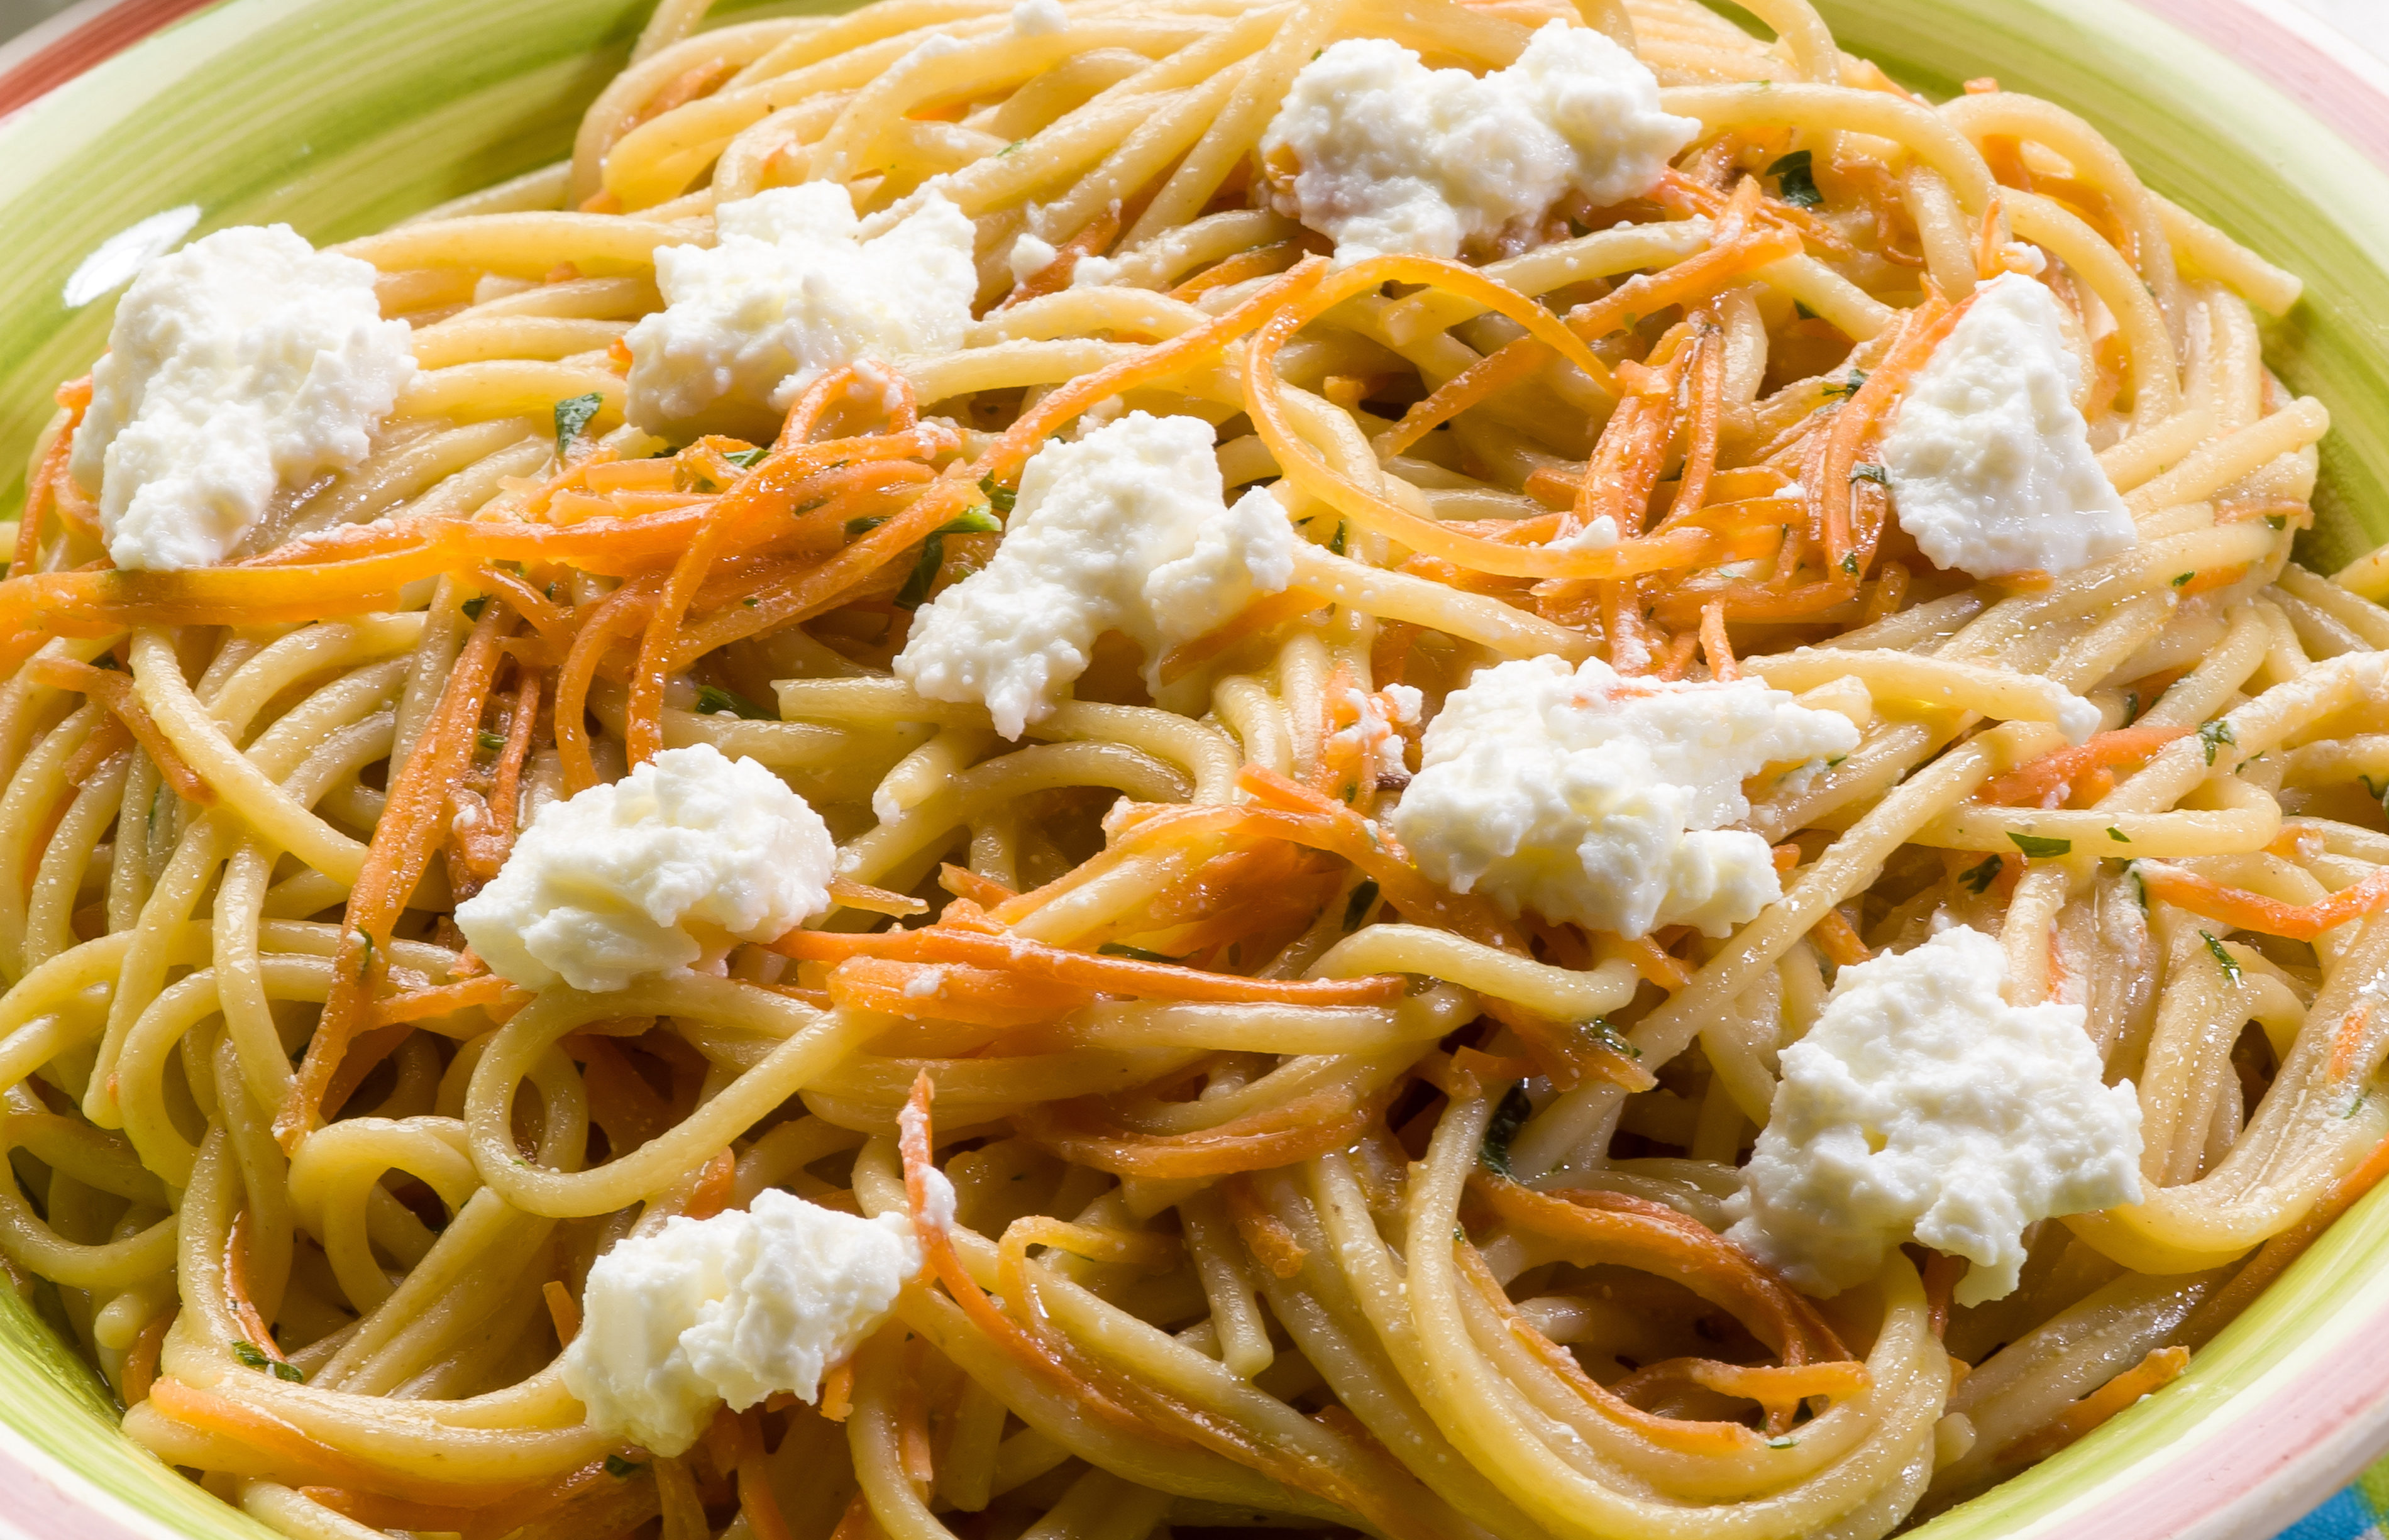 Spaghetti con zanahoria y ricotta